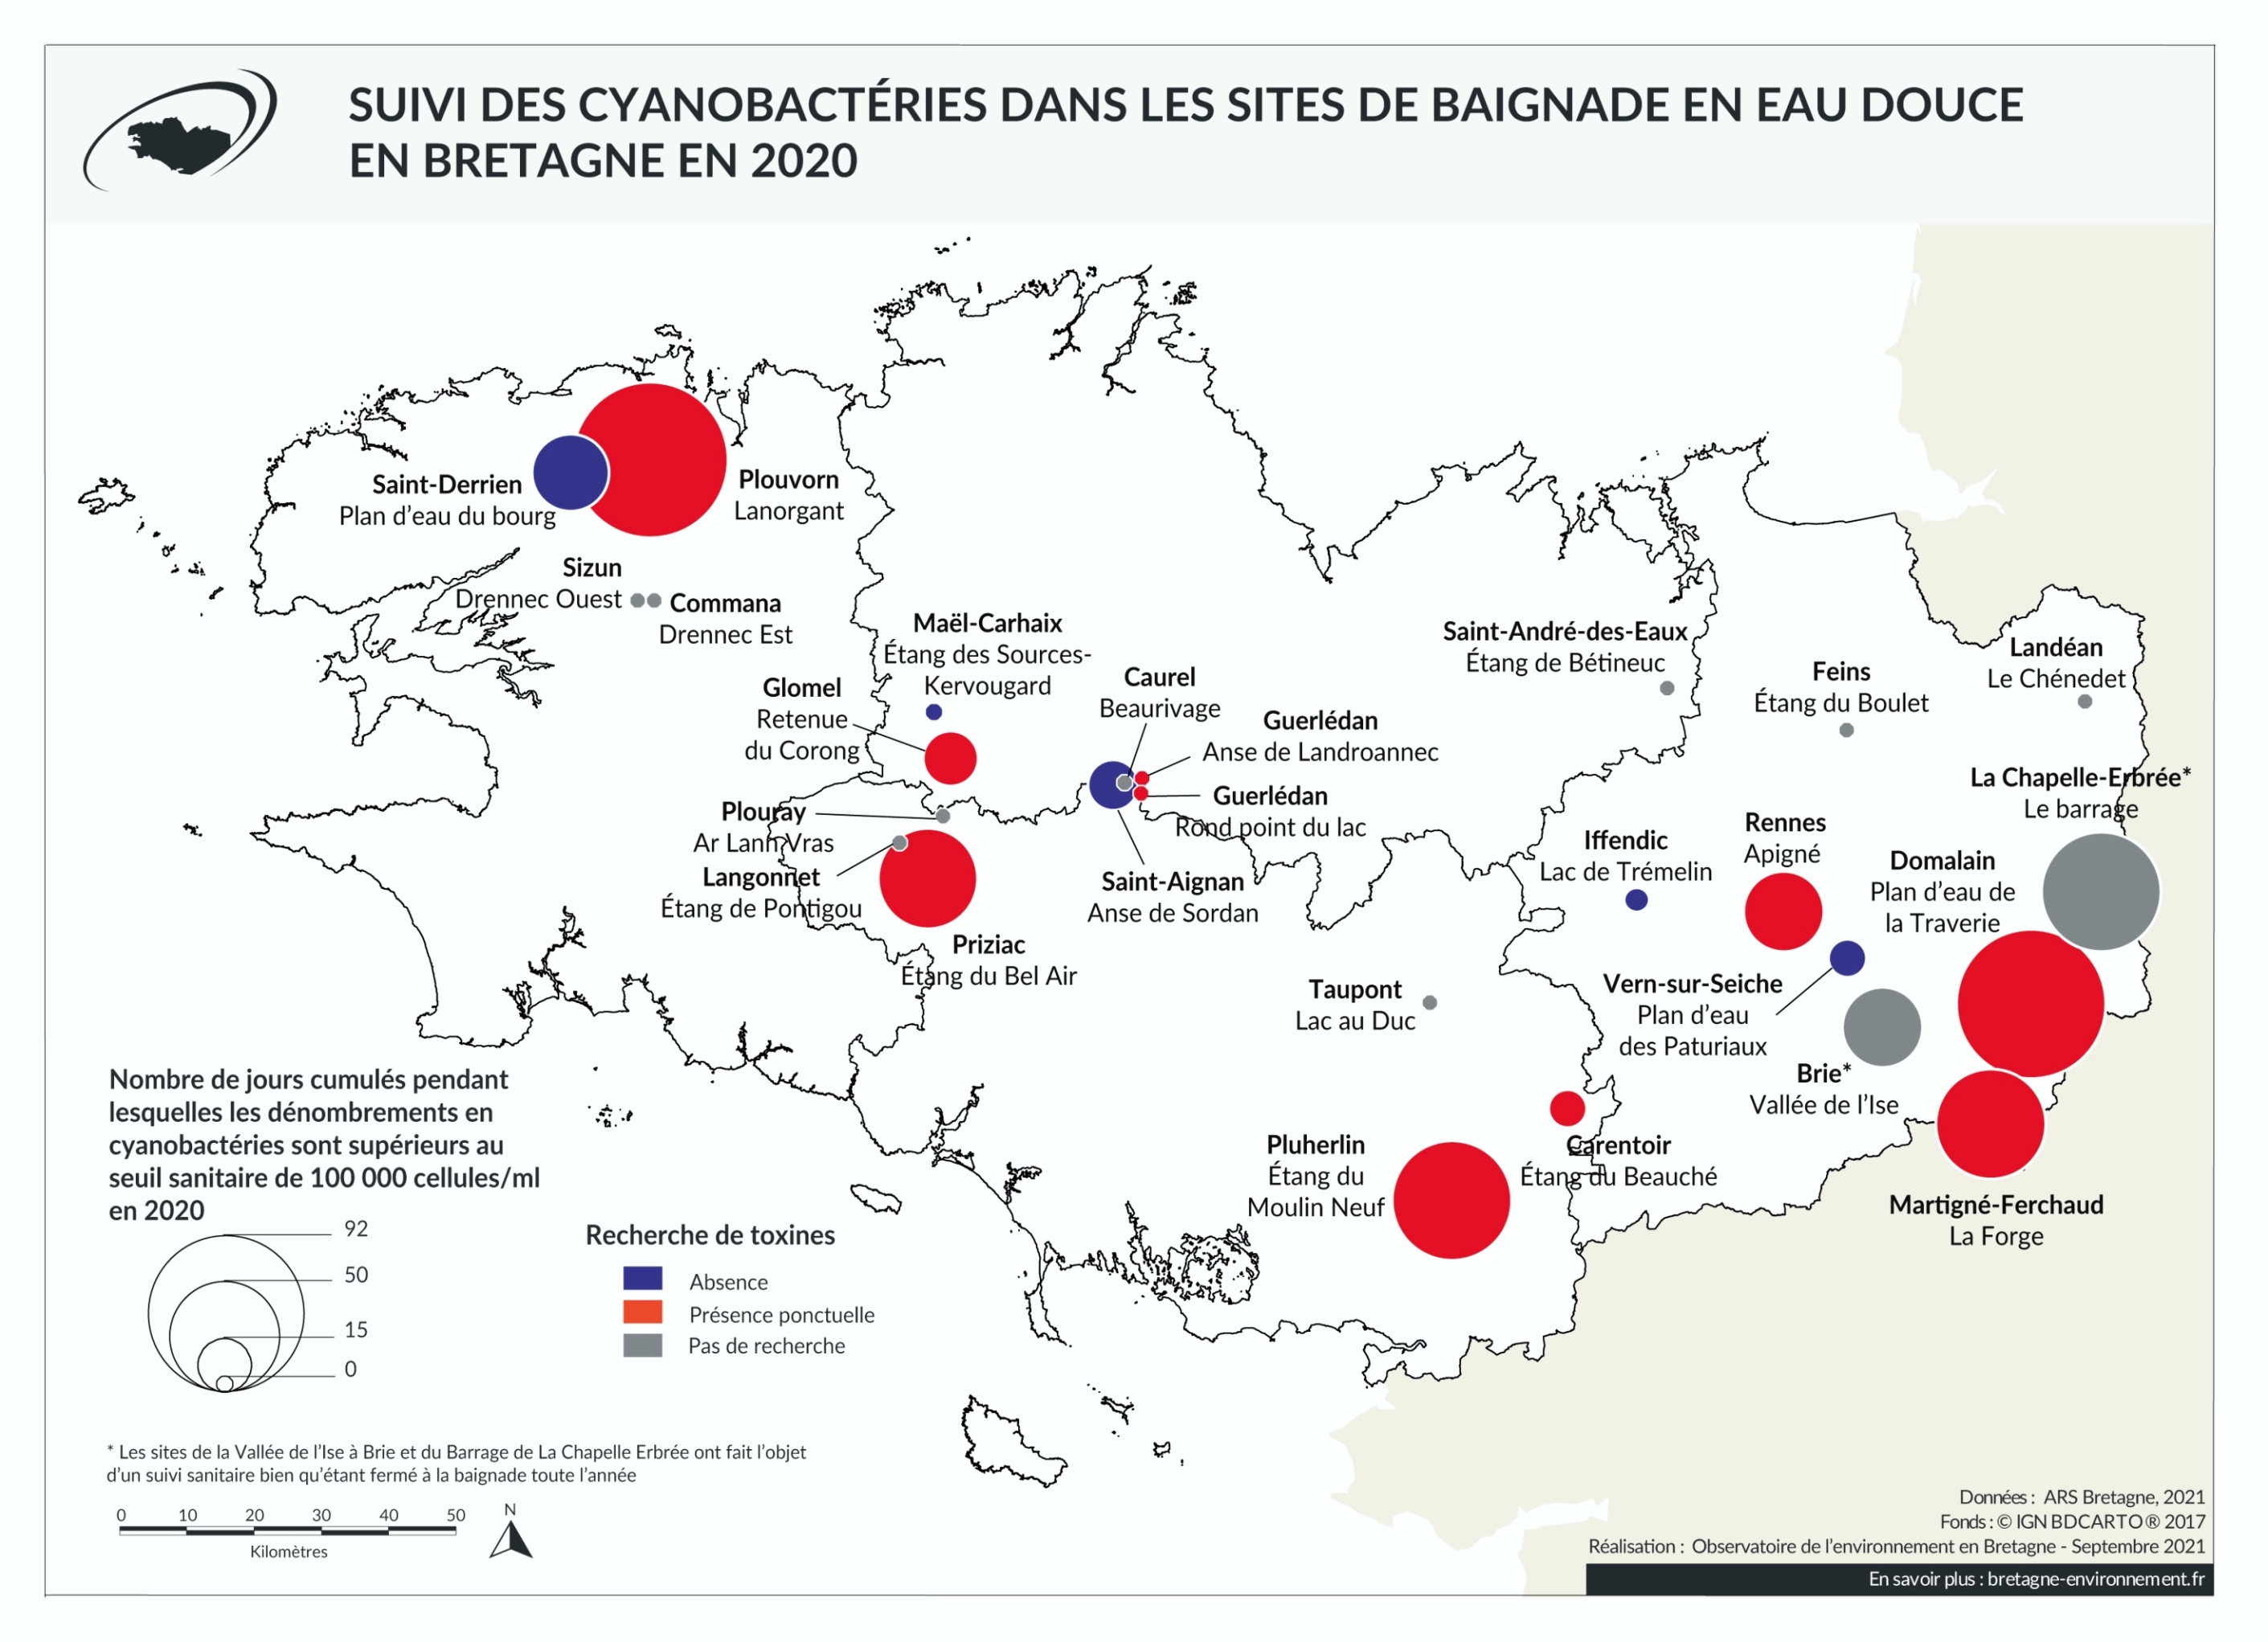 Cyanobactéries dans les eaux douces de loisir bretonnes, saison 2020